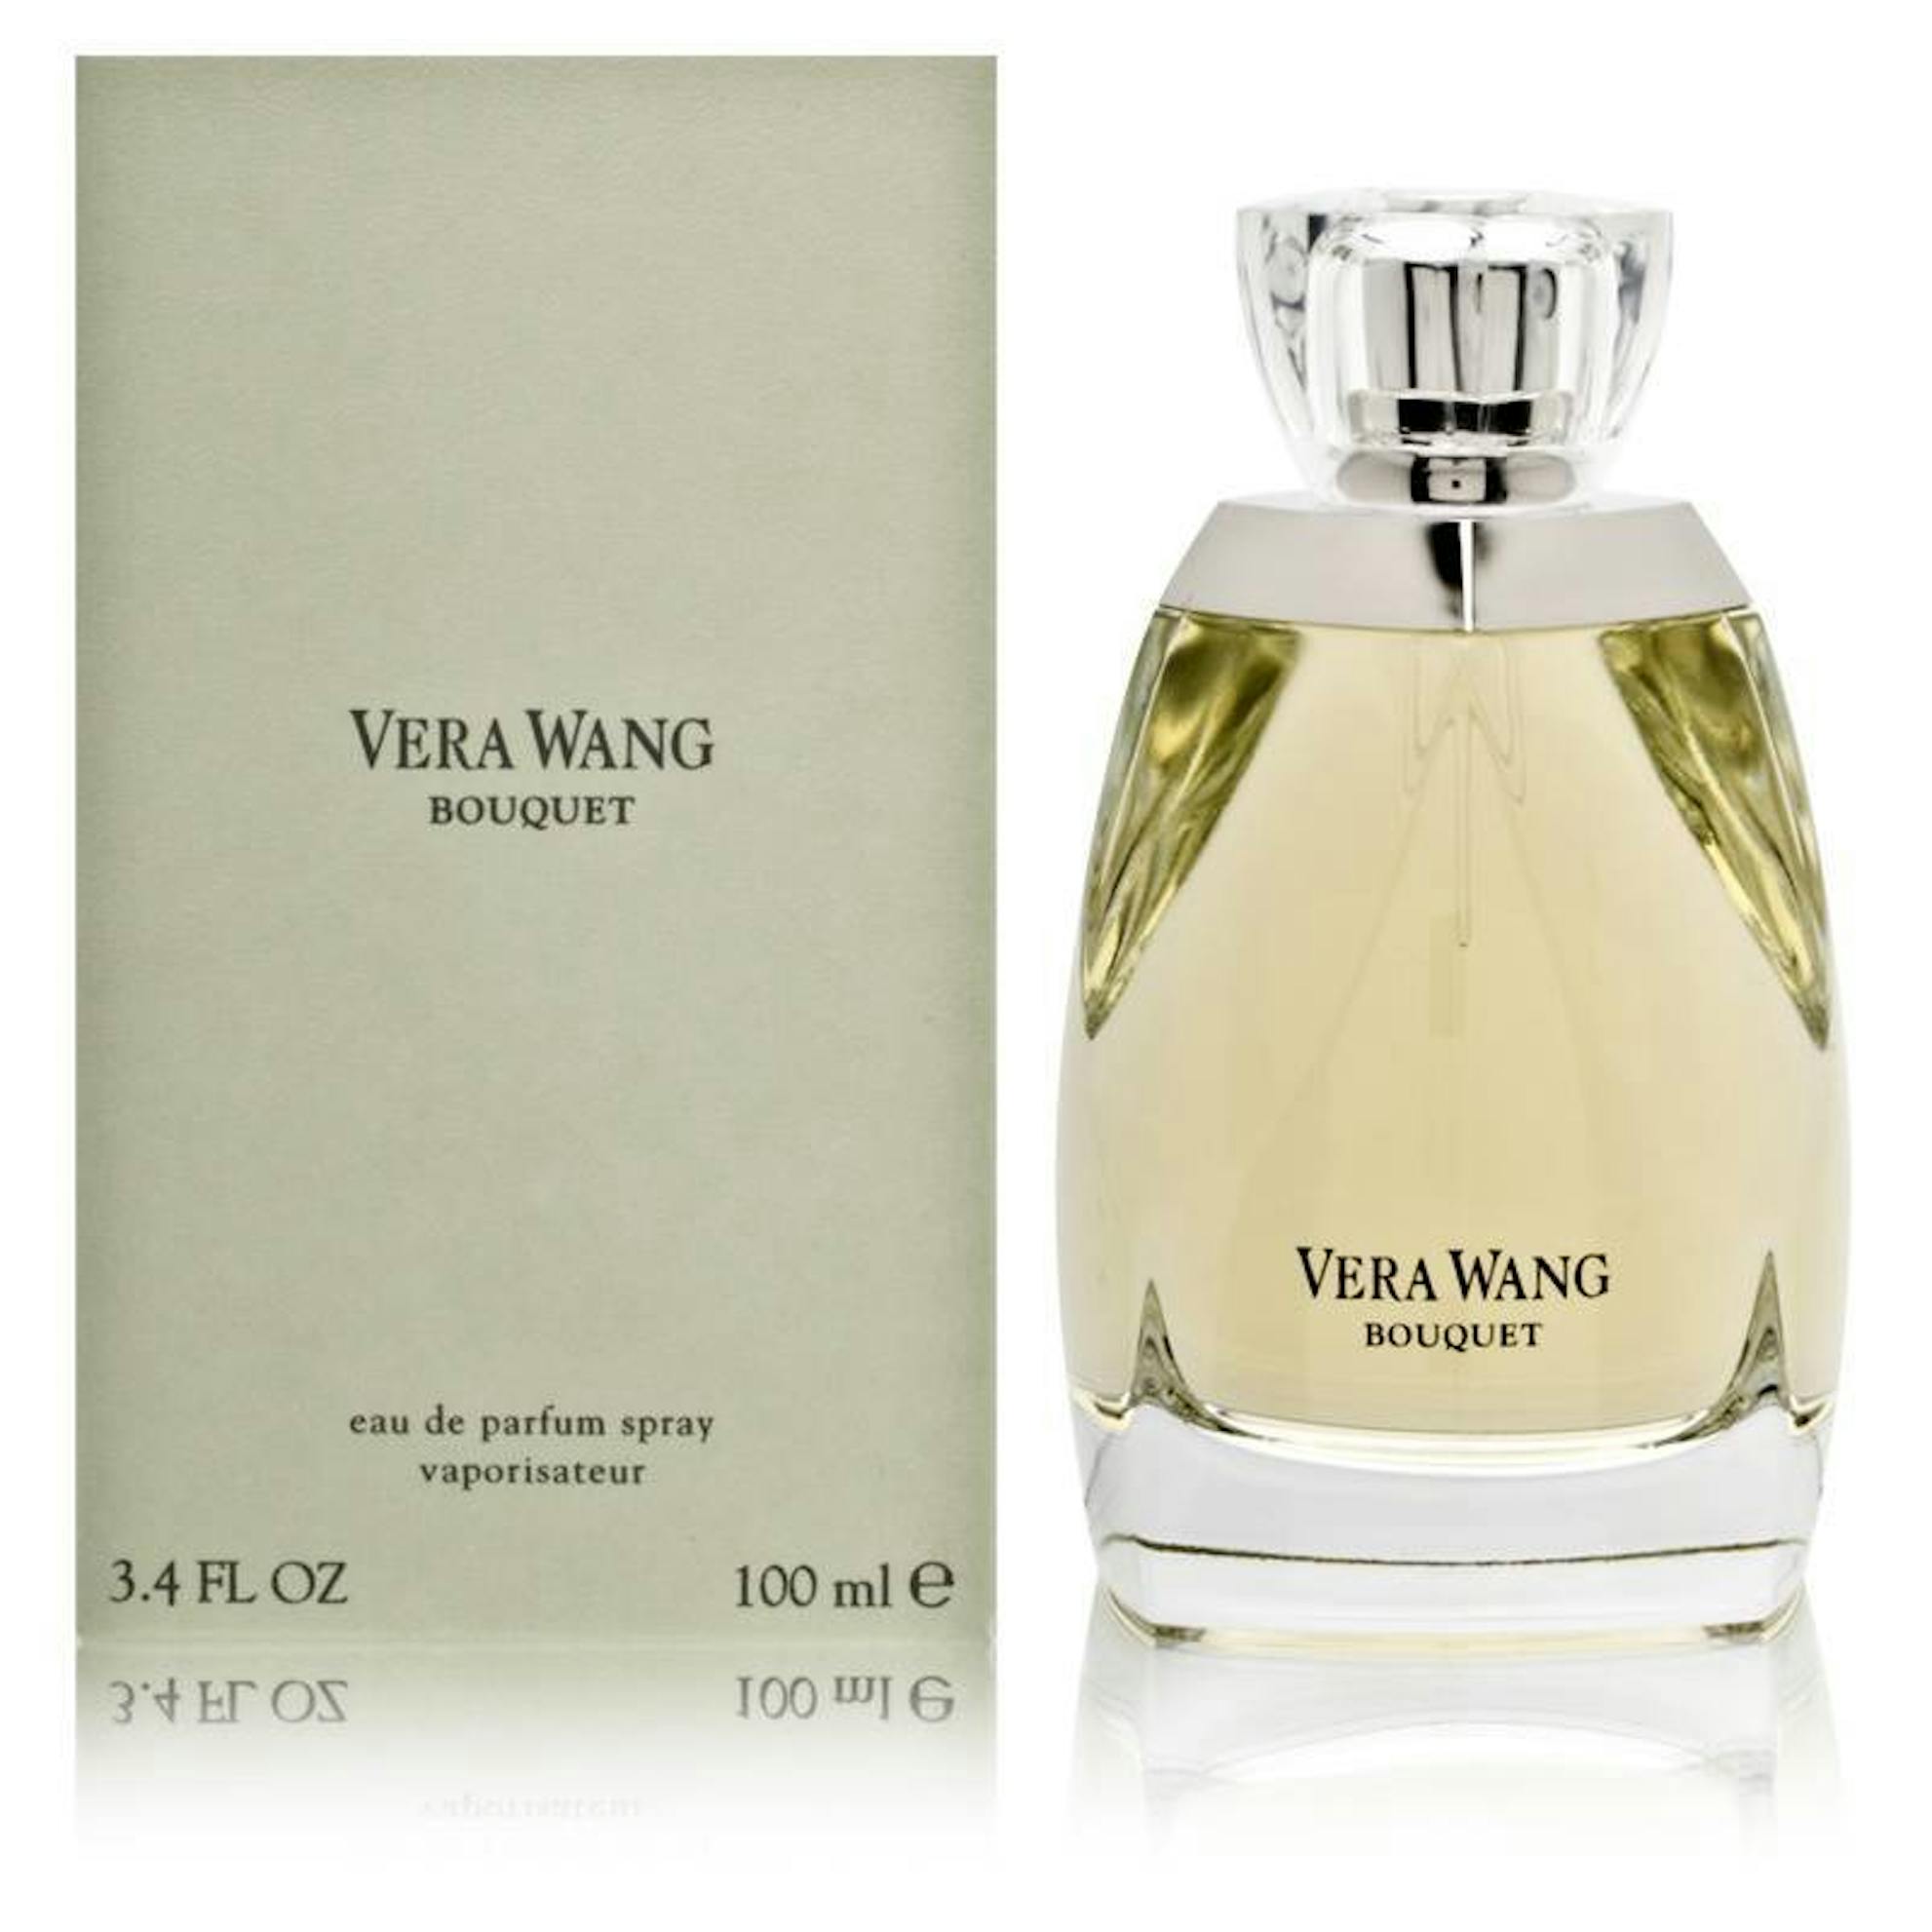 Vera Wang – Perfume Express